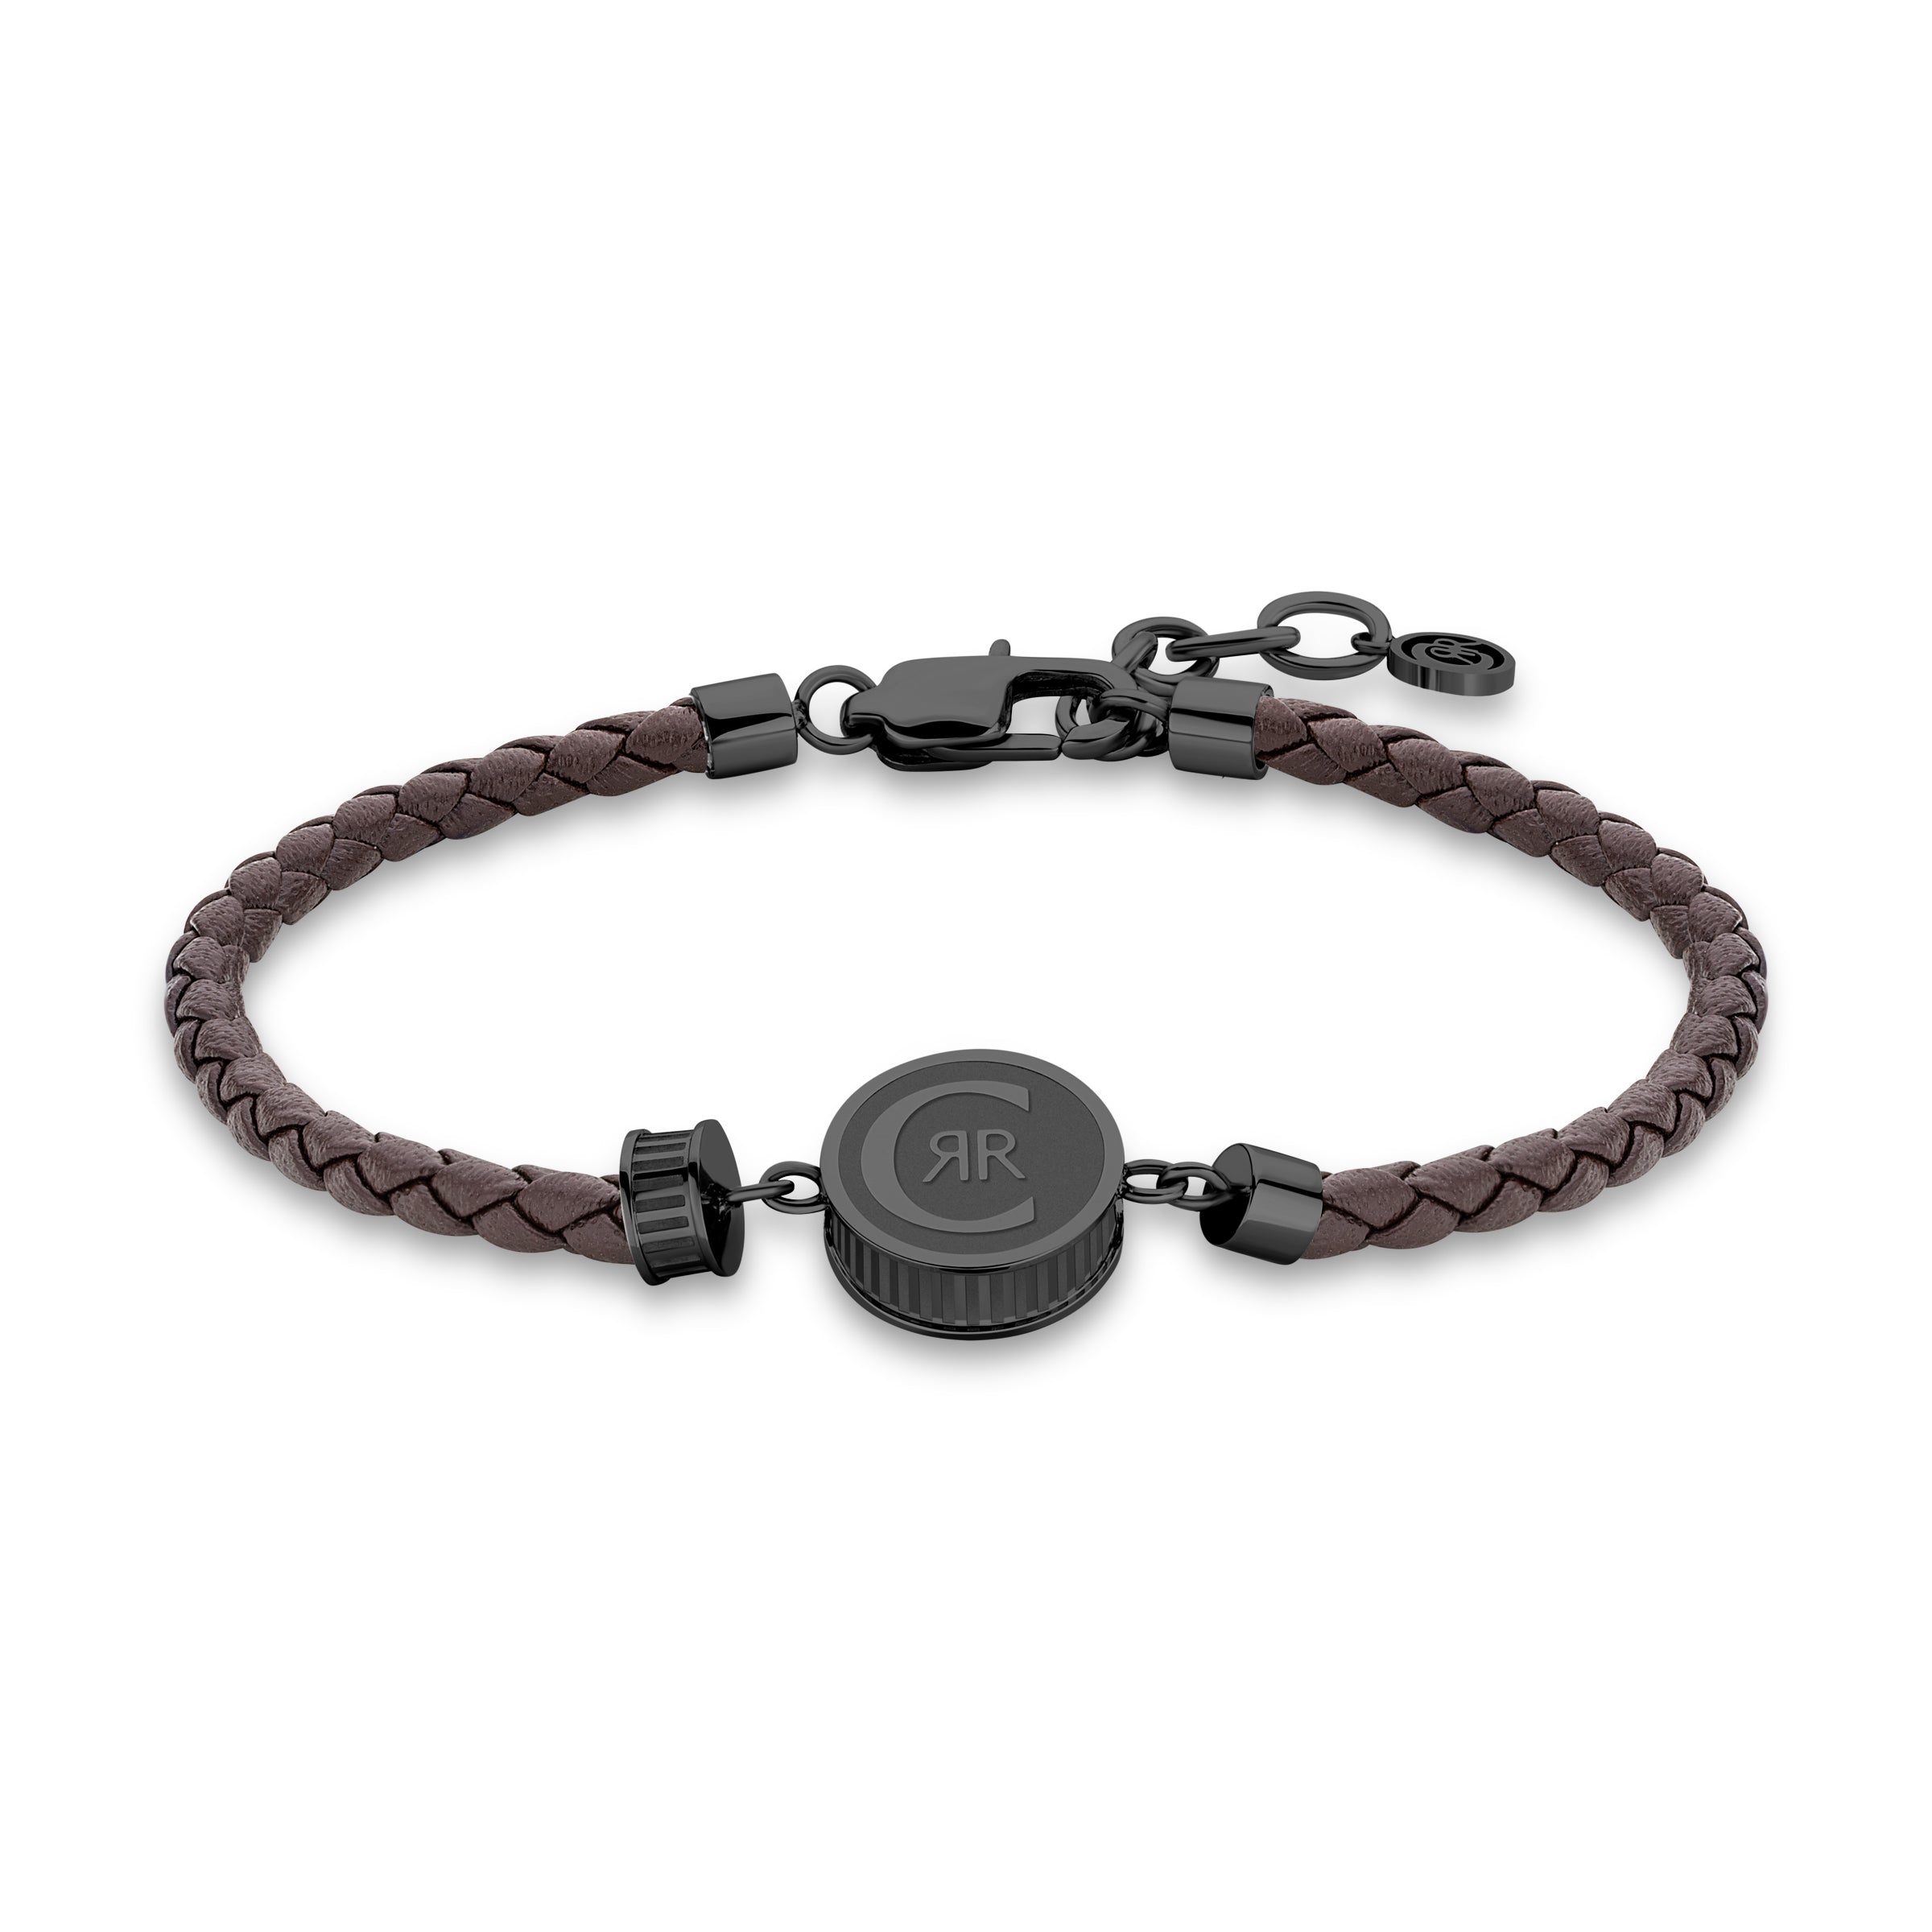 Cerruti Black and Brown Bracelet for Men - CERBR-0007